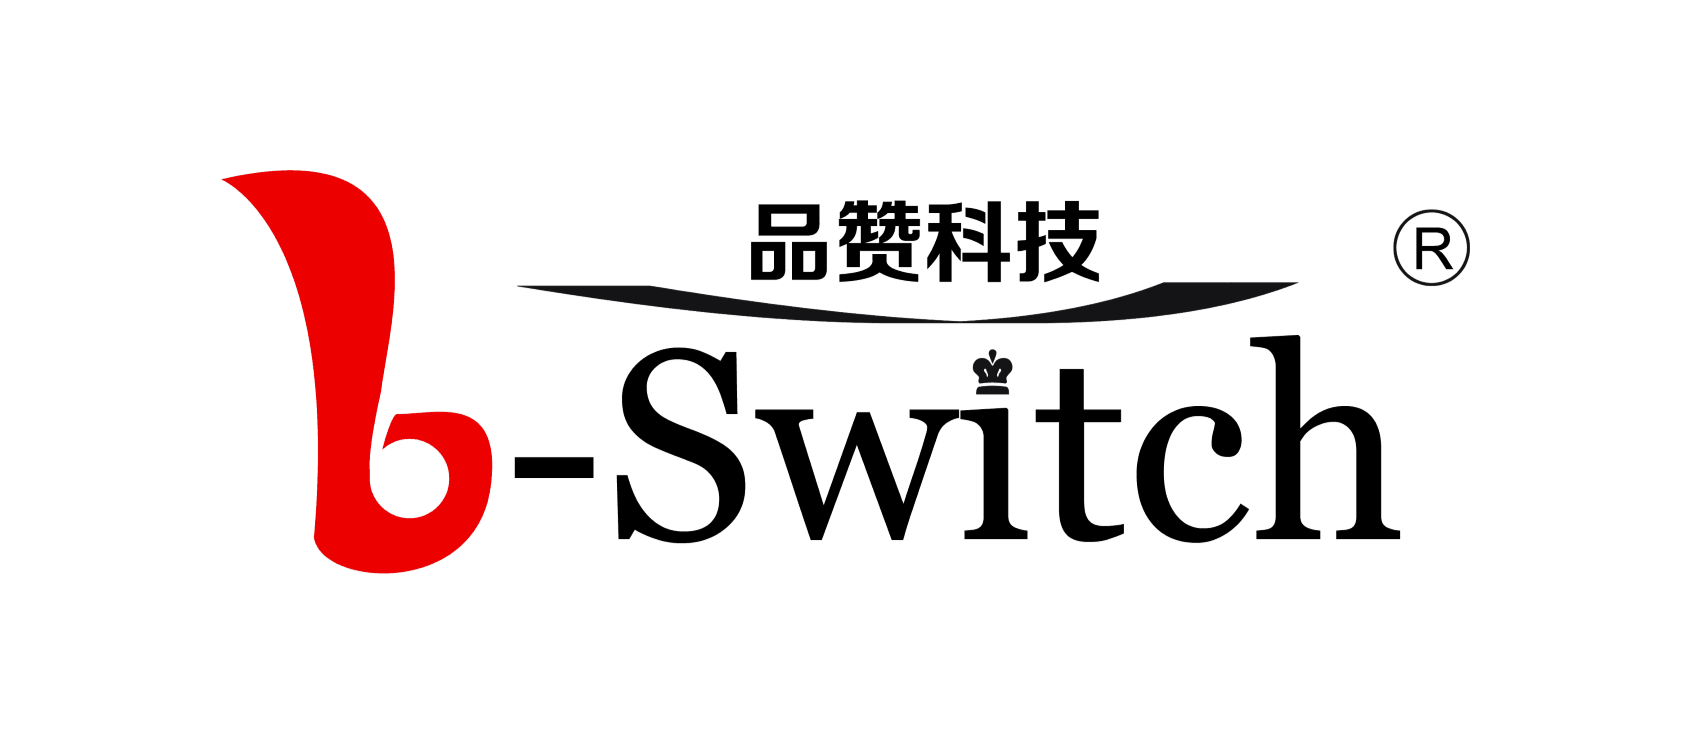 品赞G-Switch